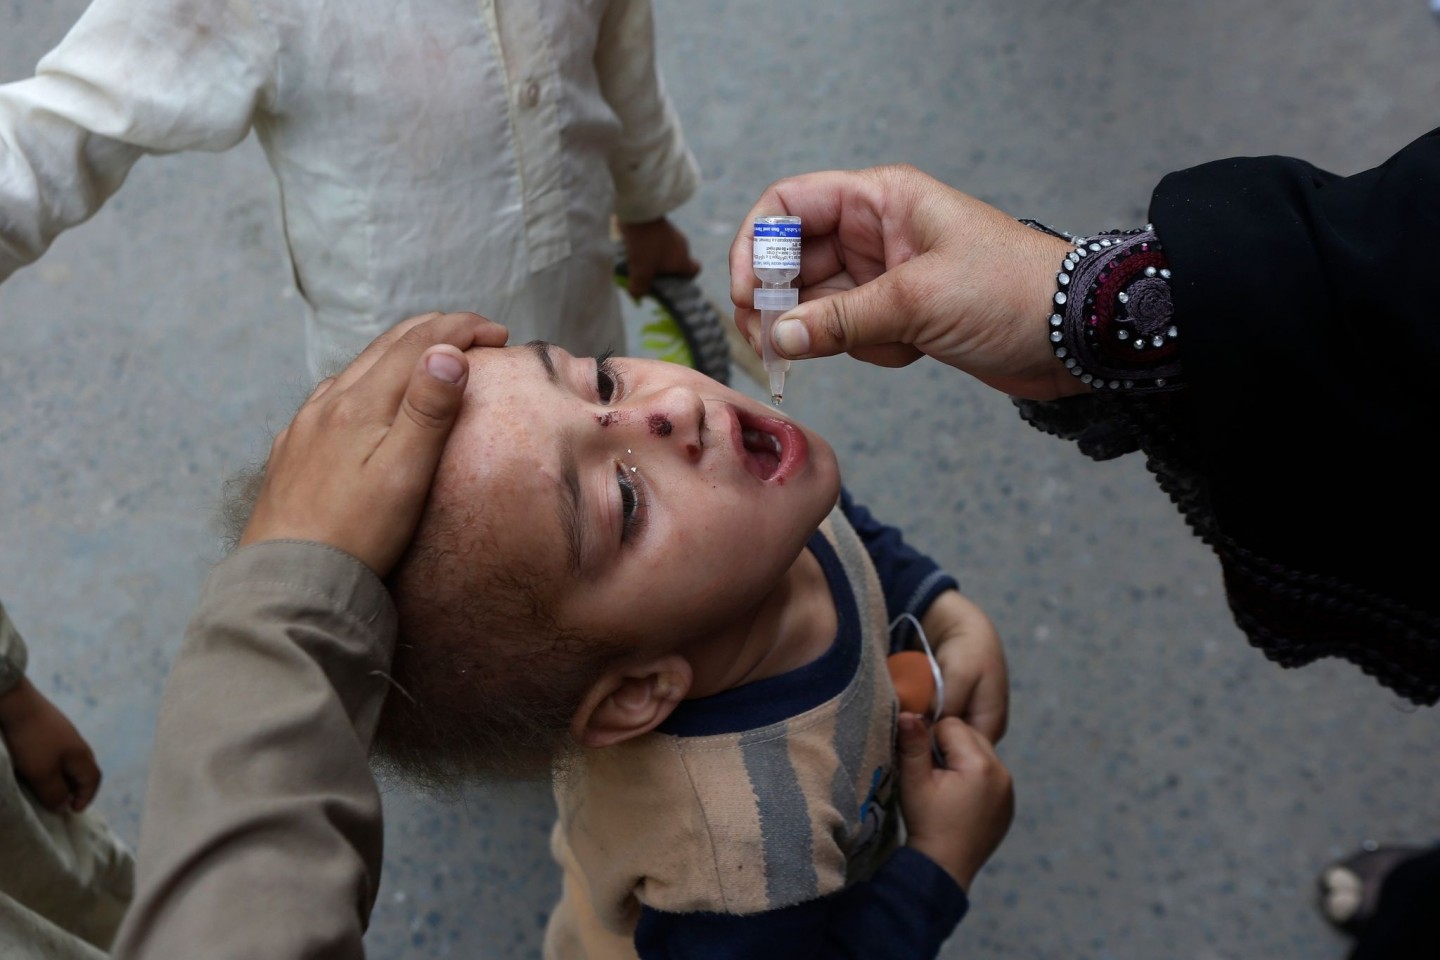 Ein Mitarbeiter des Gesundheitswesens gibt einem Kind eine Schluckimpfung gegen Polio (Kinderlähmung).